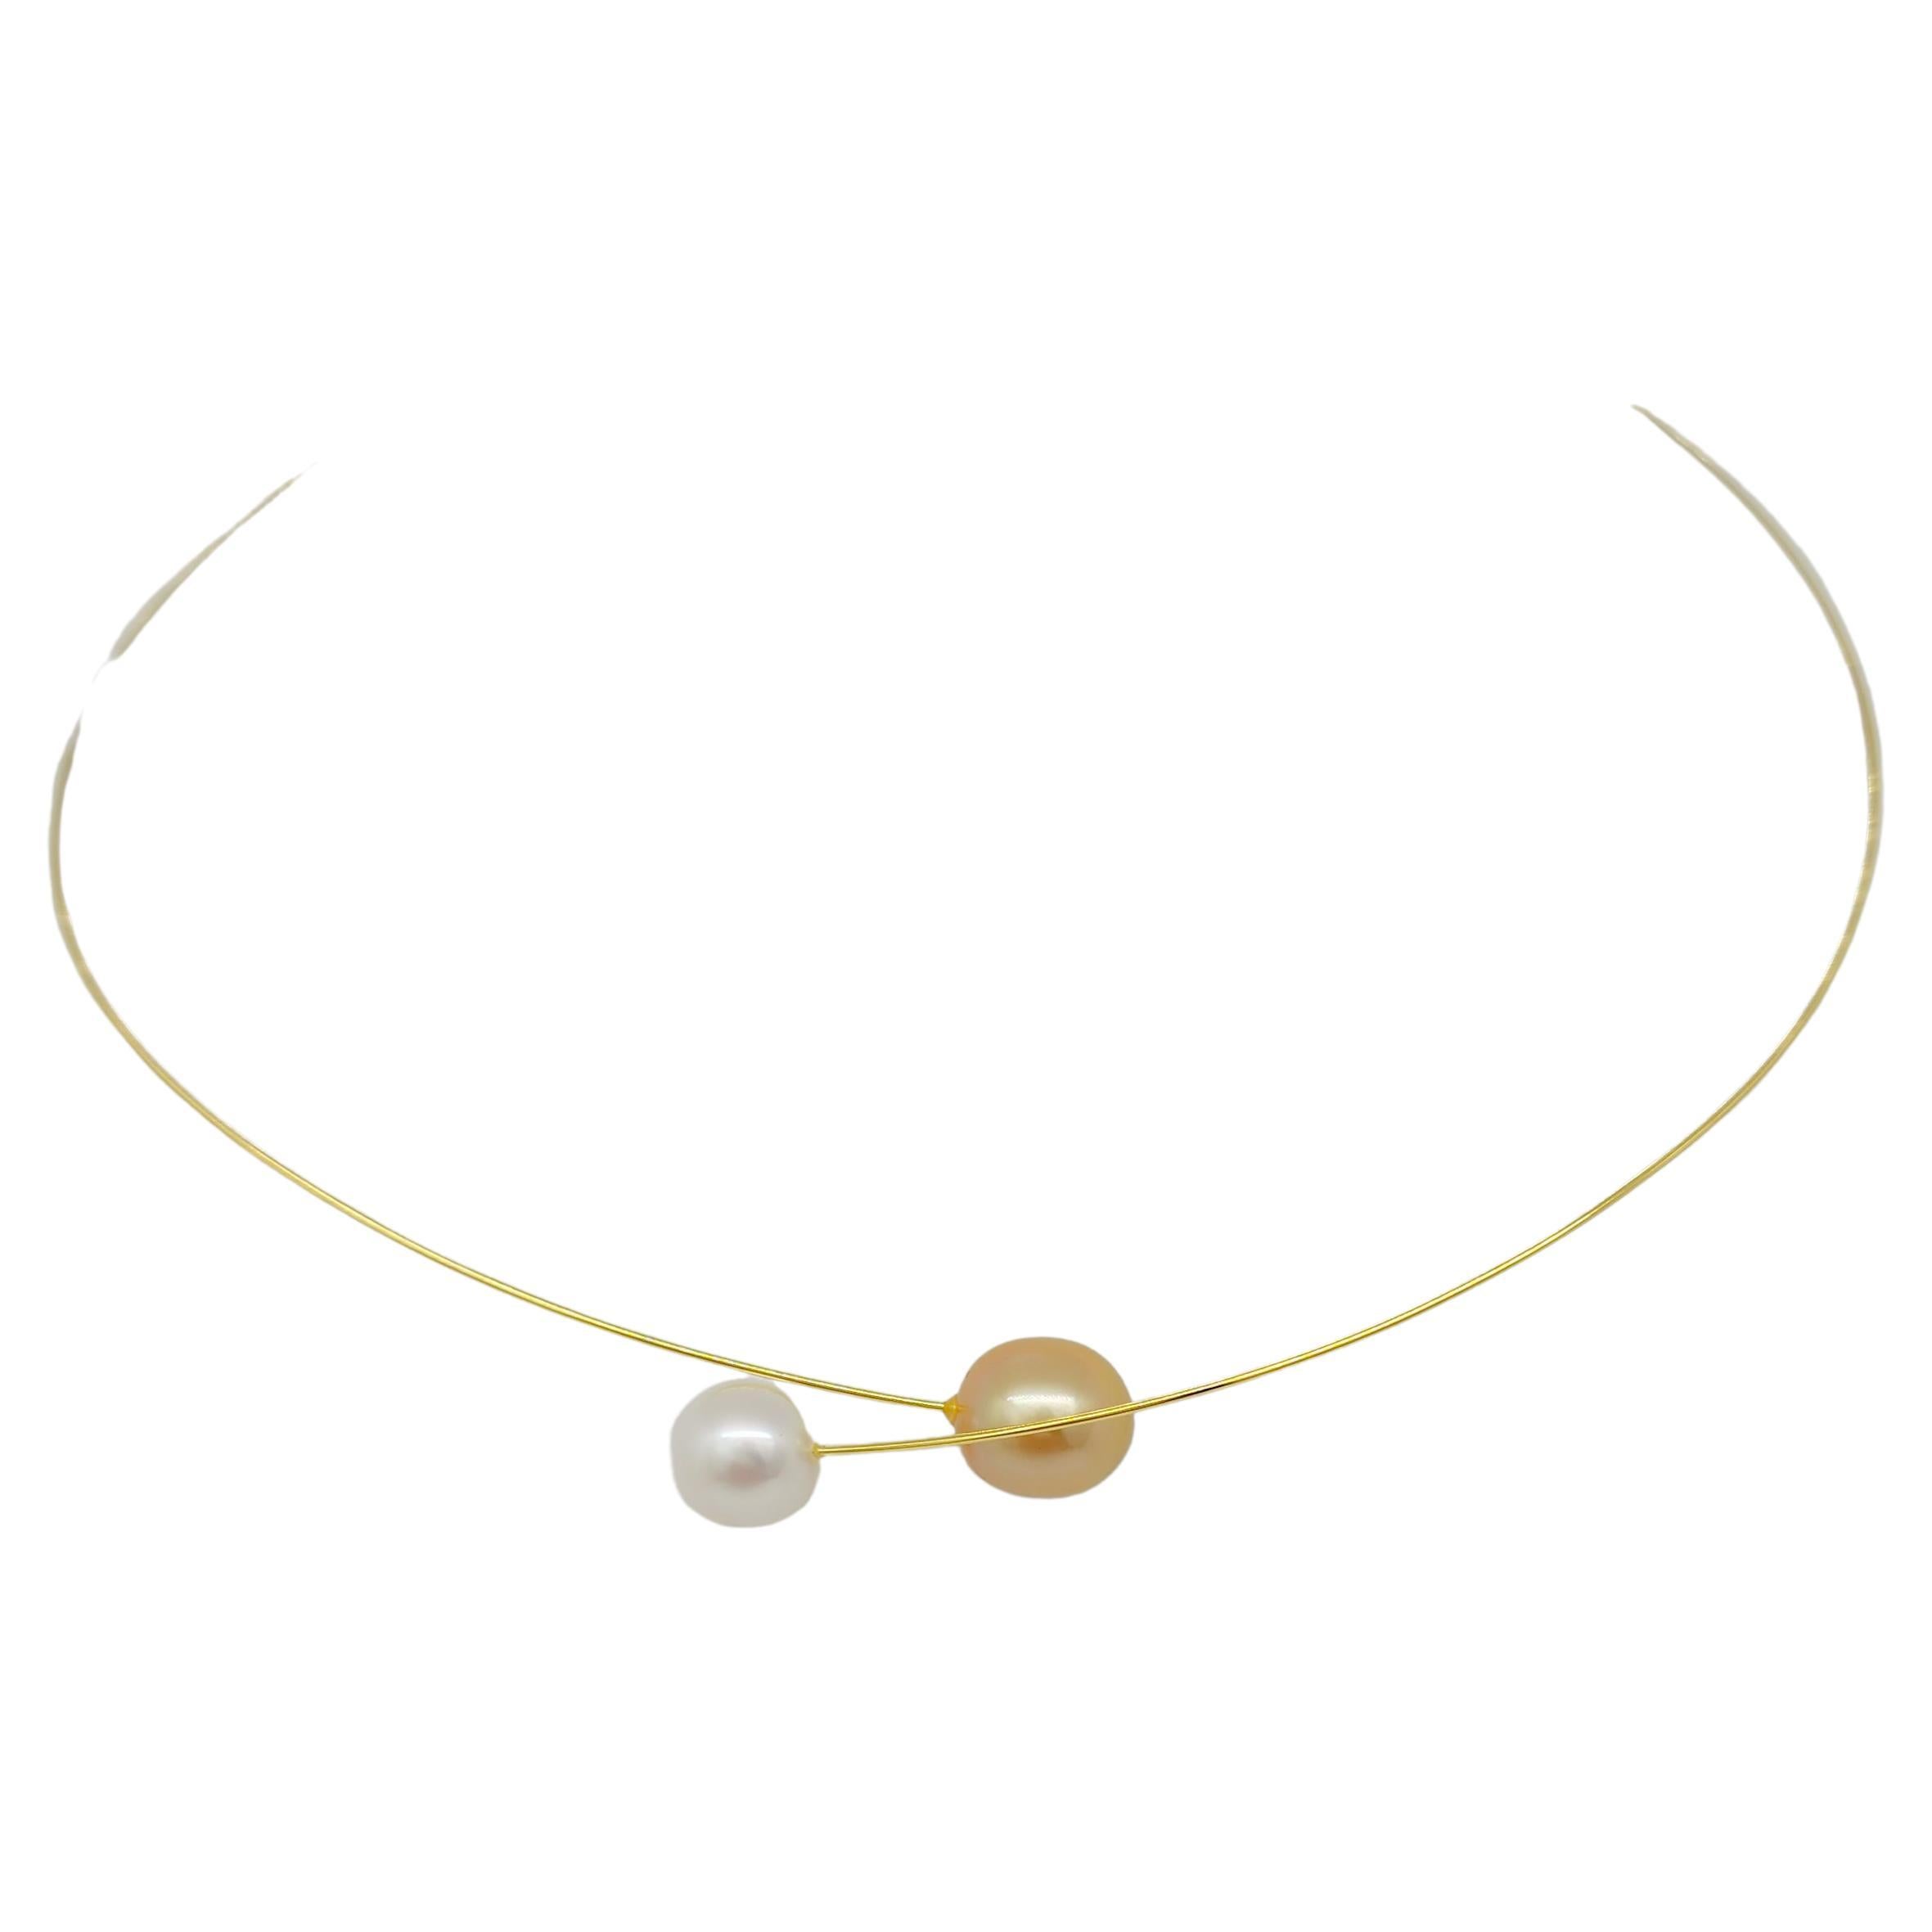 Halskette aus 18 Karat Gelbgold mit goldenen und weißen Perlen